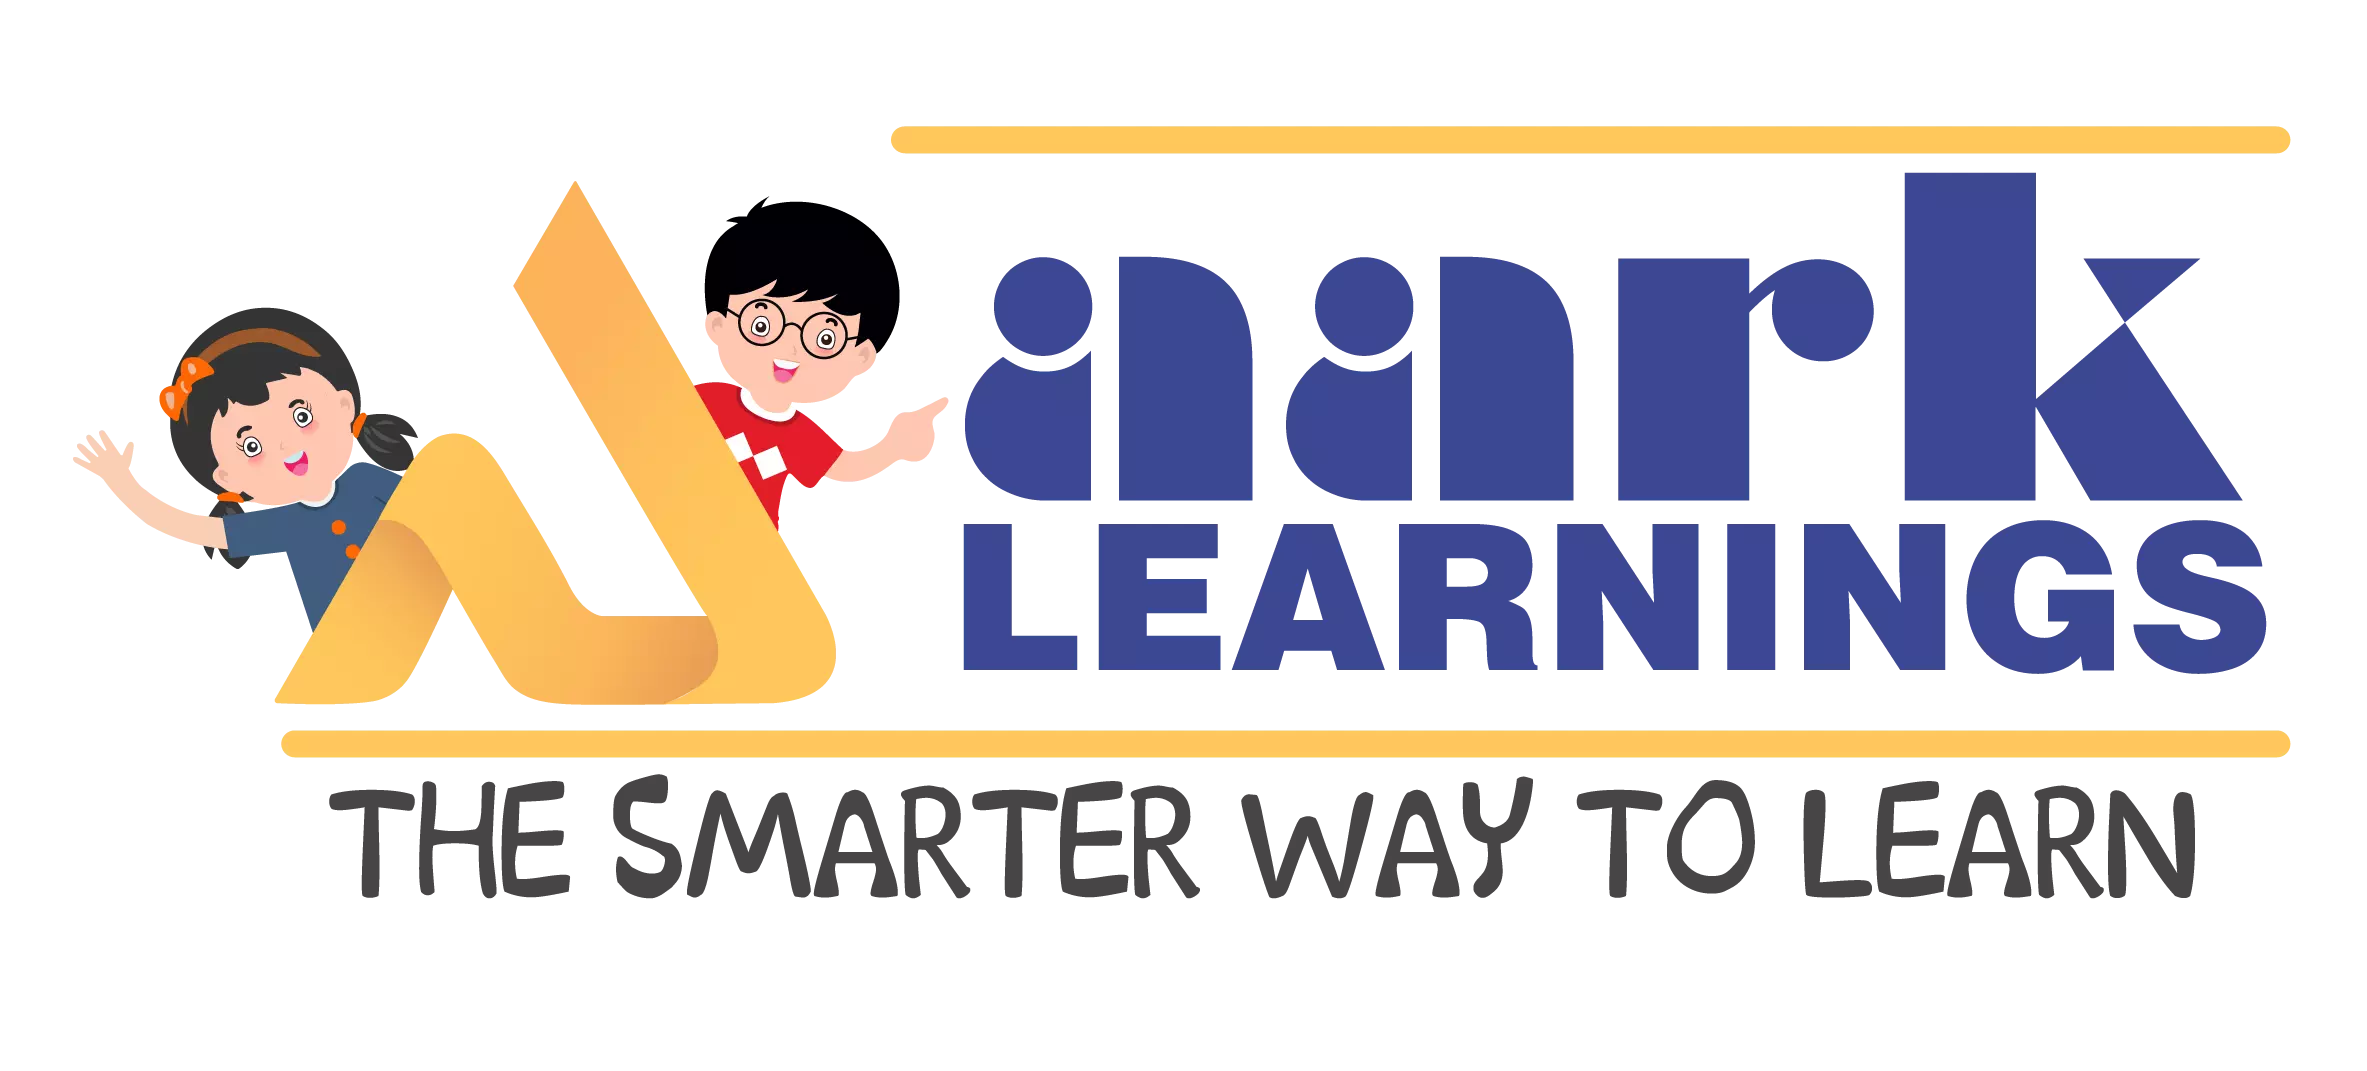 Aark Learnings logo